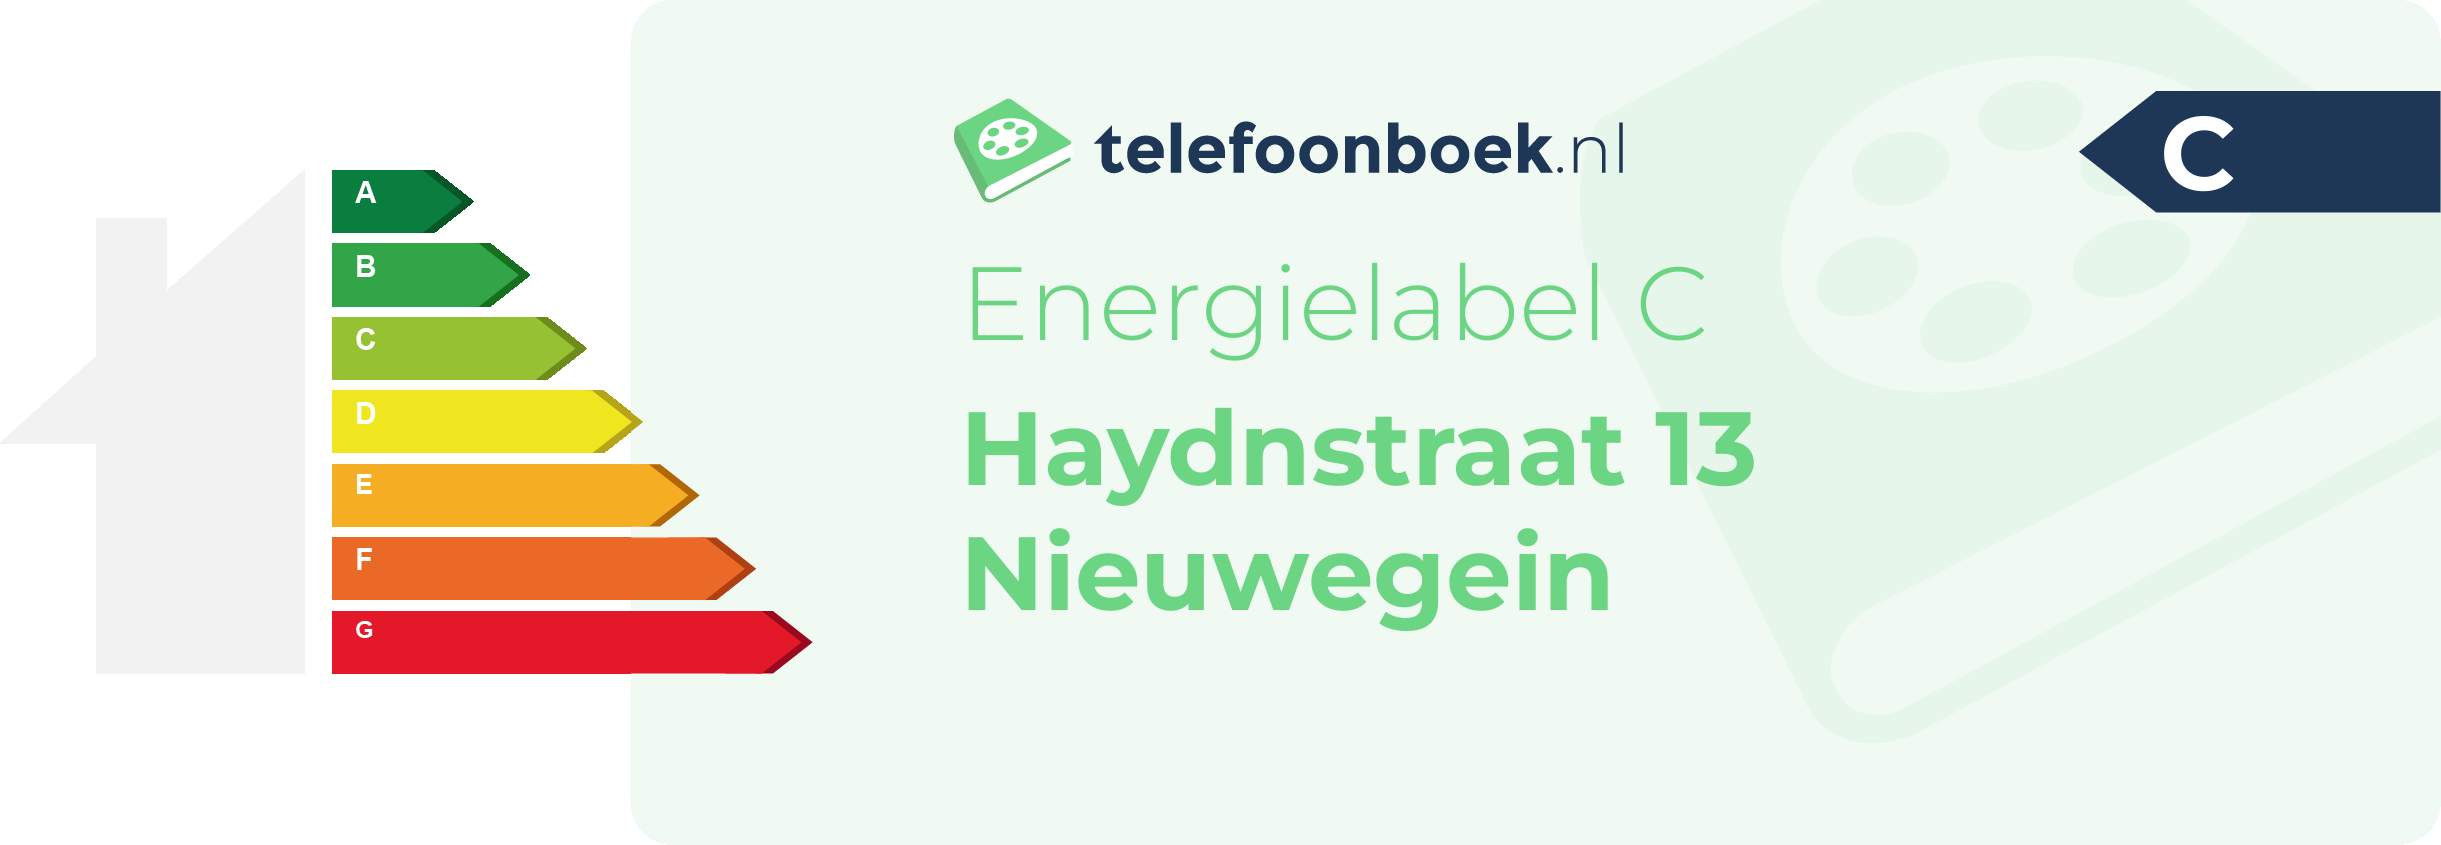 Energielabel Haydnstraat 13 Nieuwegein